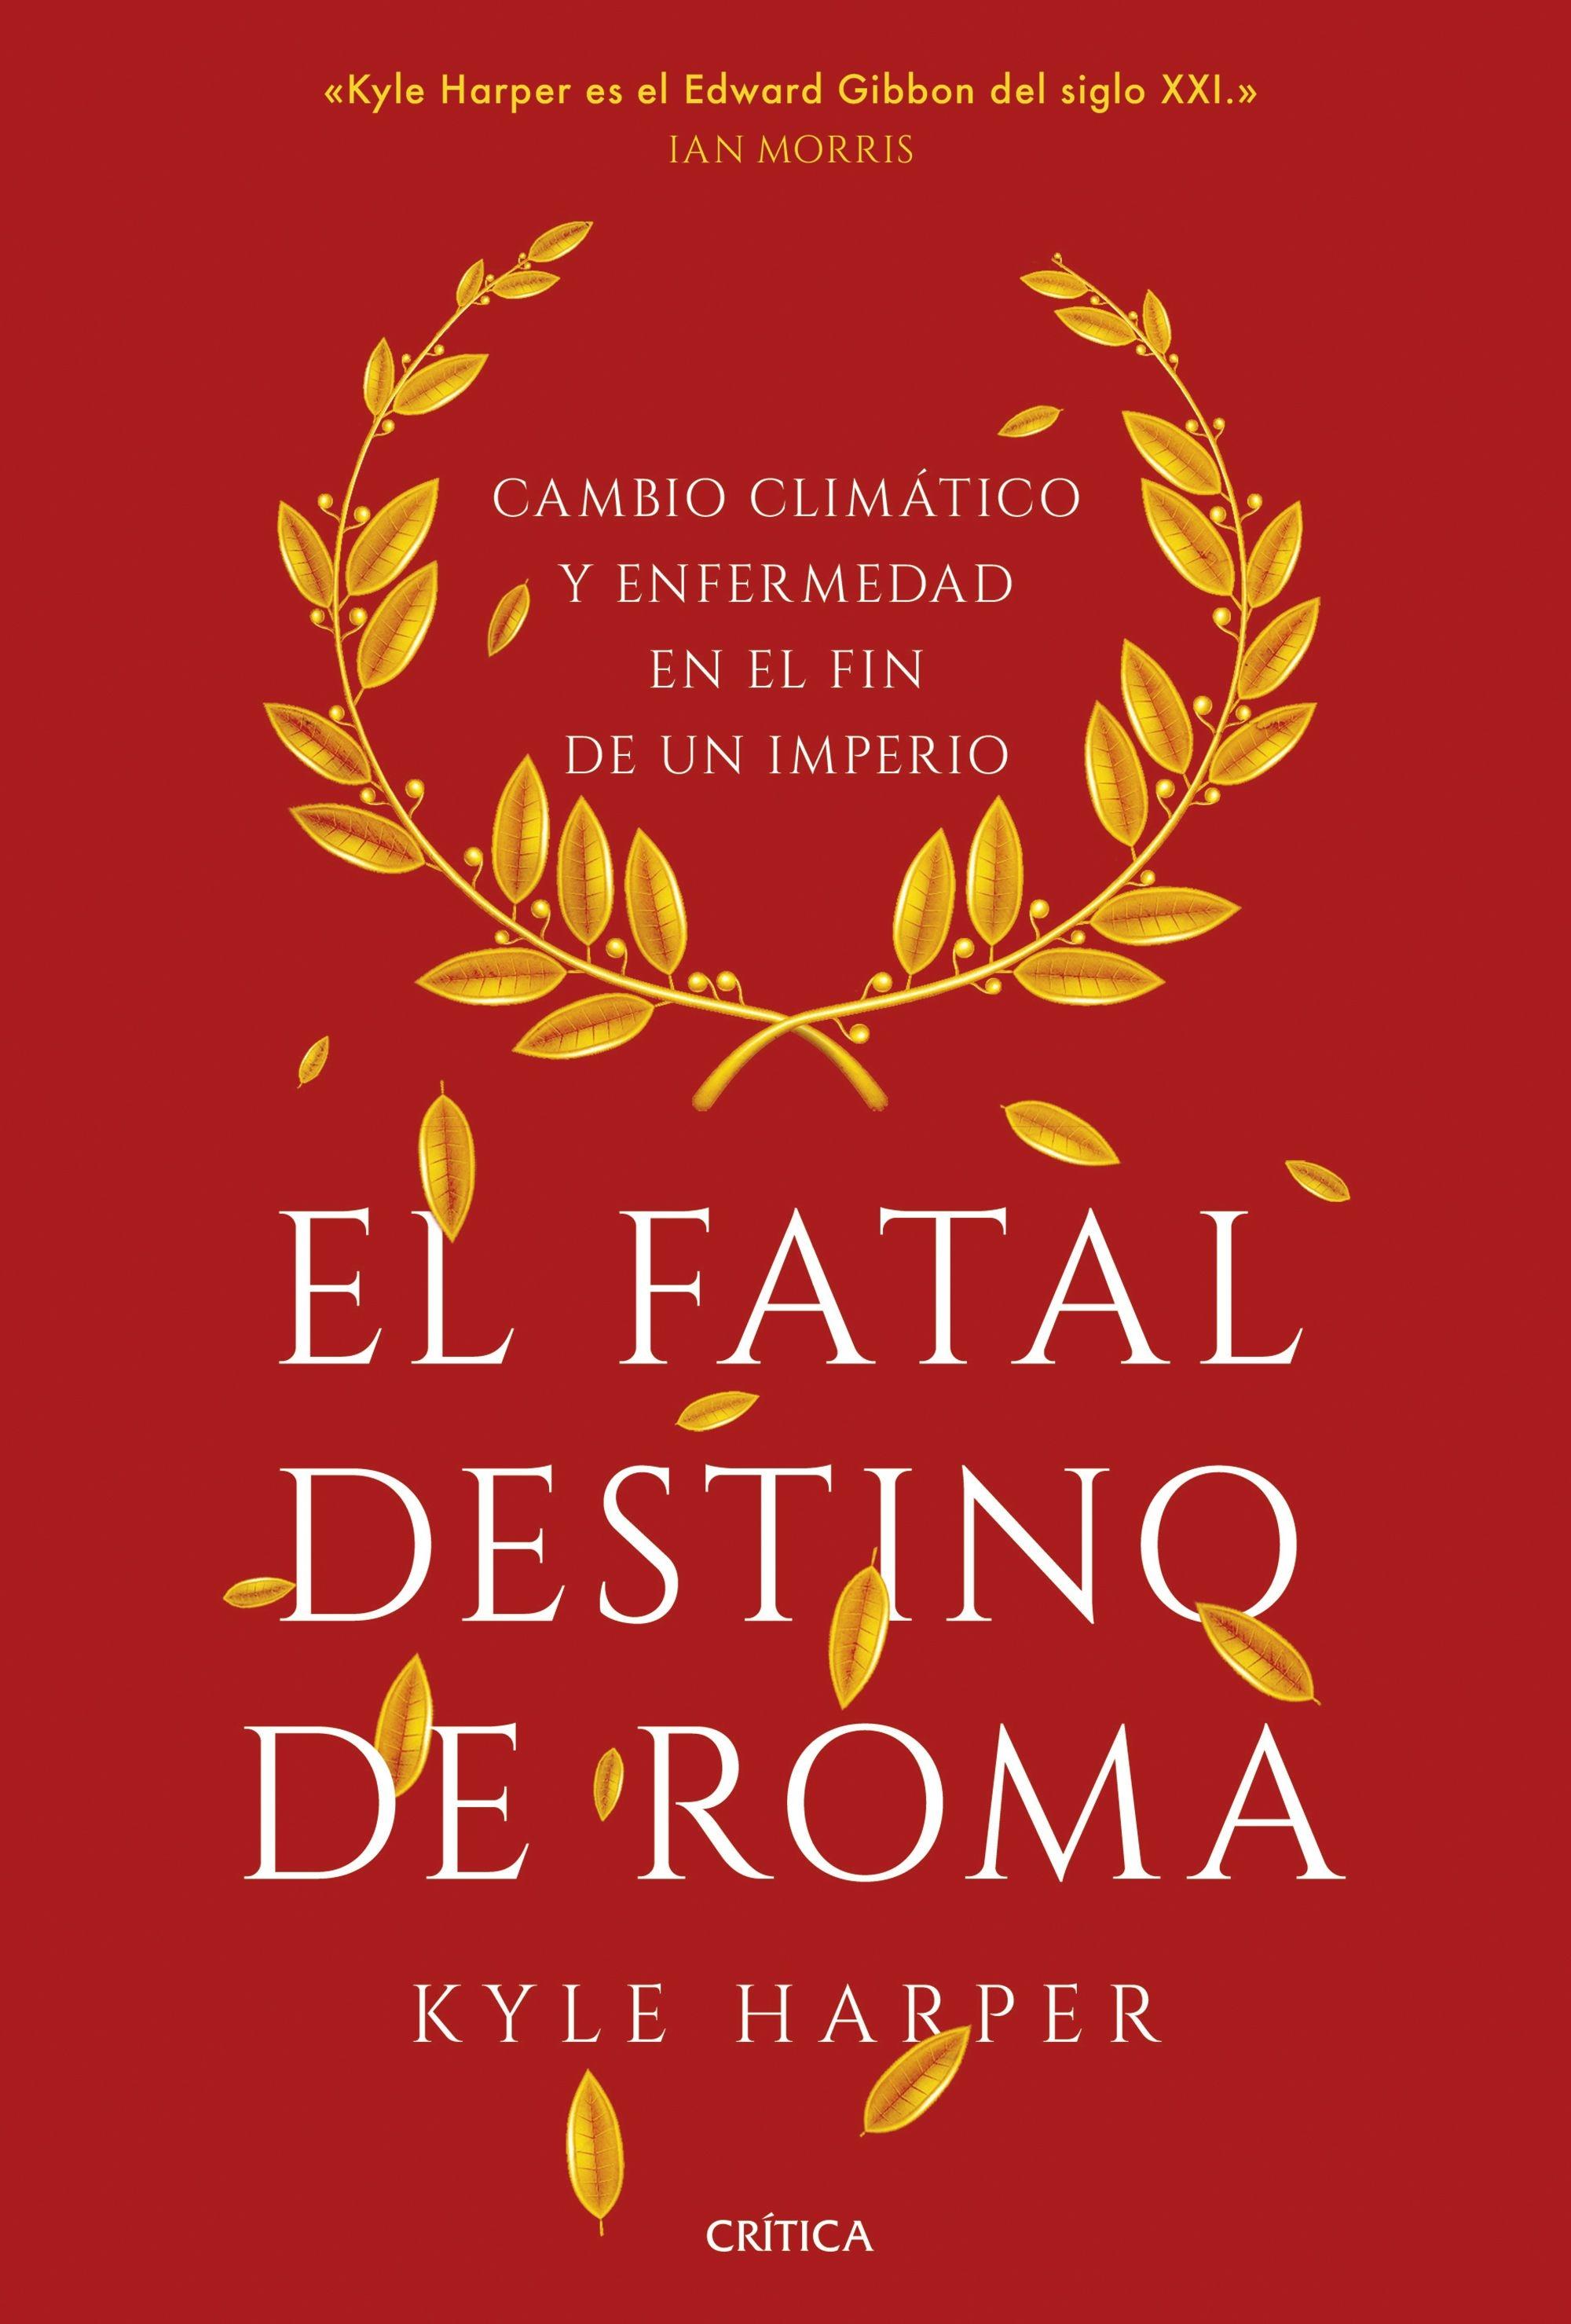 Fatal destino de Roma, El "Cambio climático y enfermedad en el fin de un imperio"